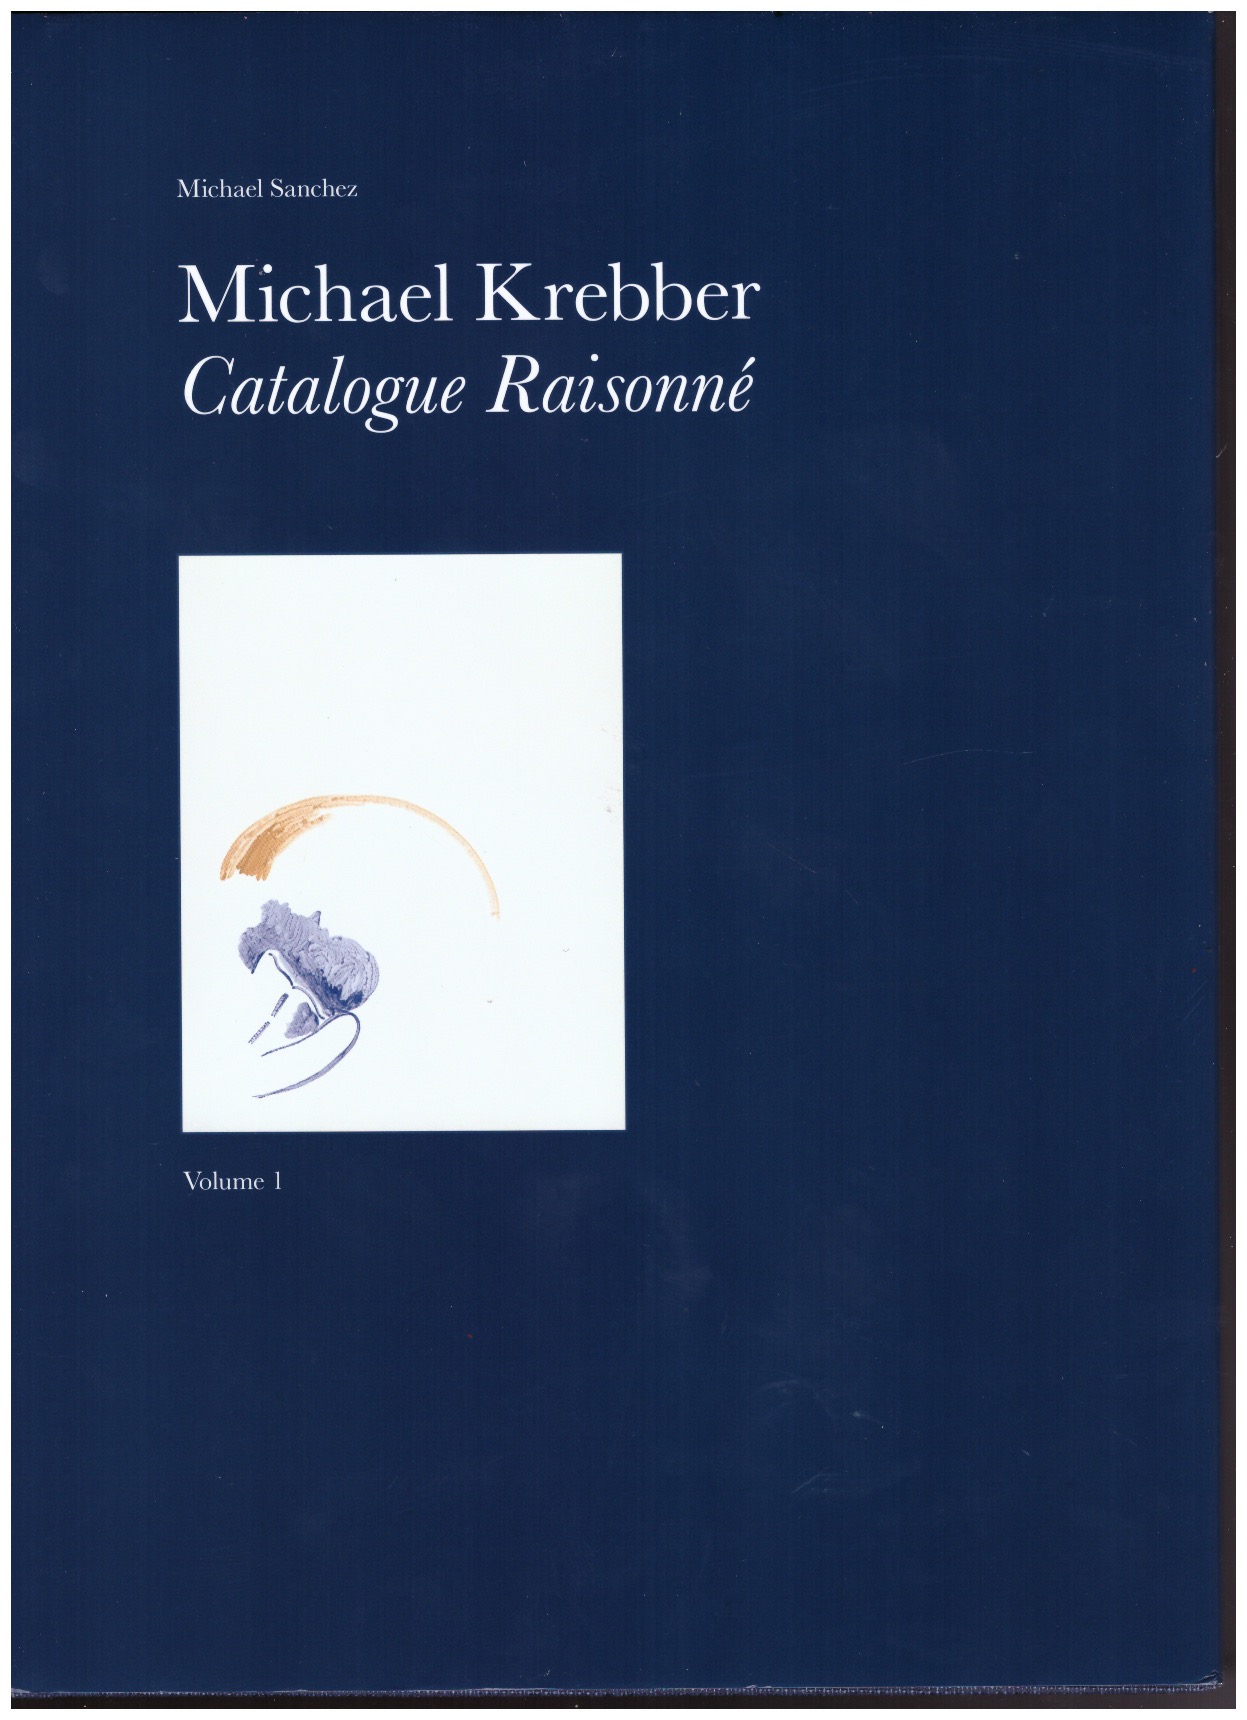 KREBBER, Michael; SANCHEZ, Michael (ed.) - Michael Krebber Catalogue Raisonné